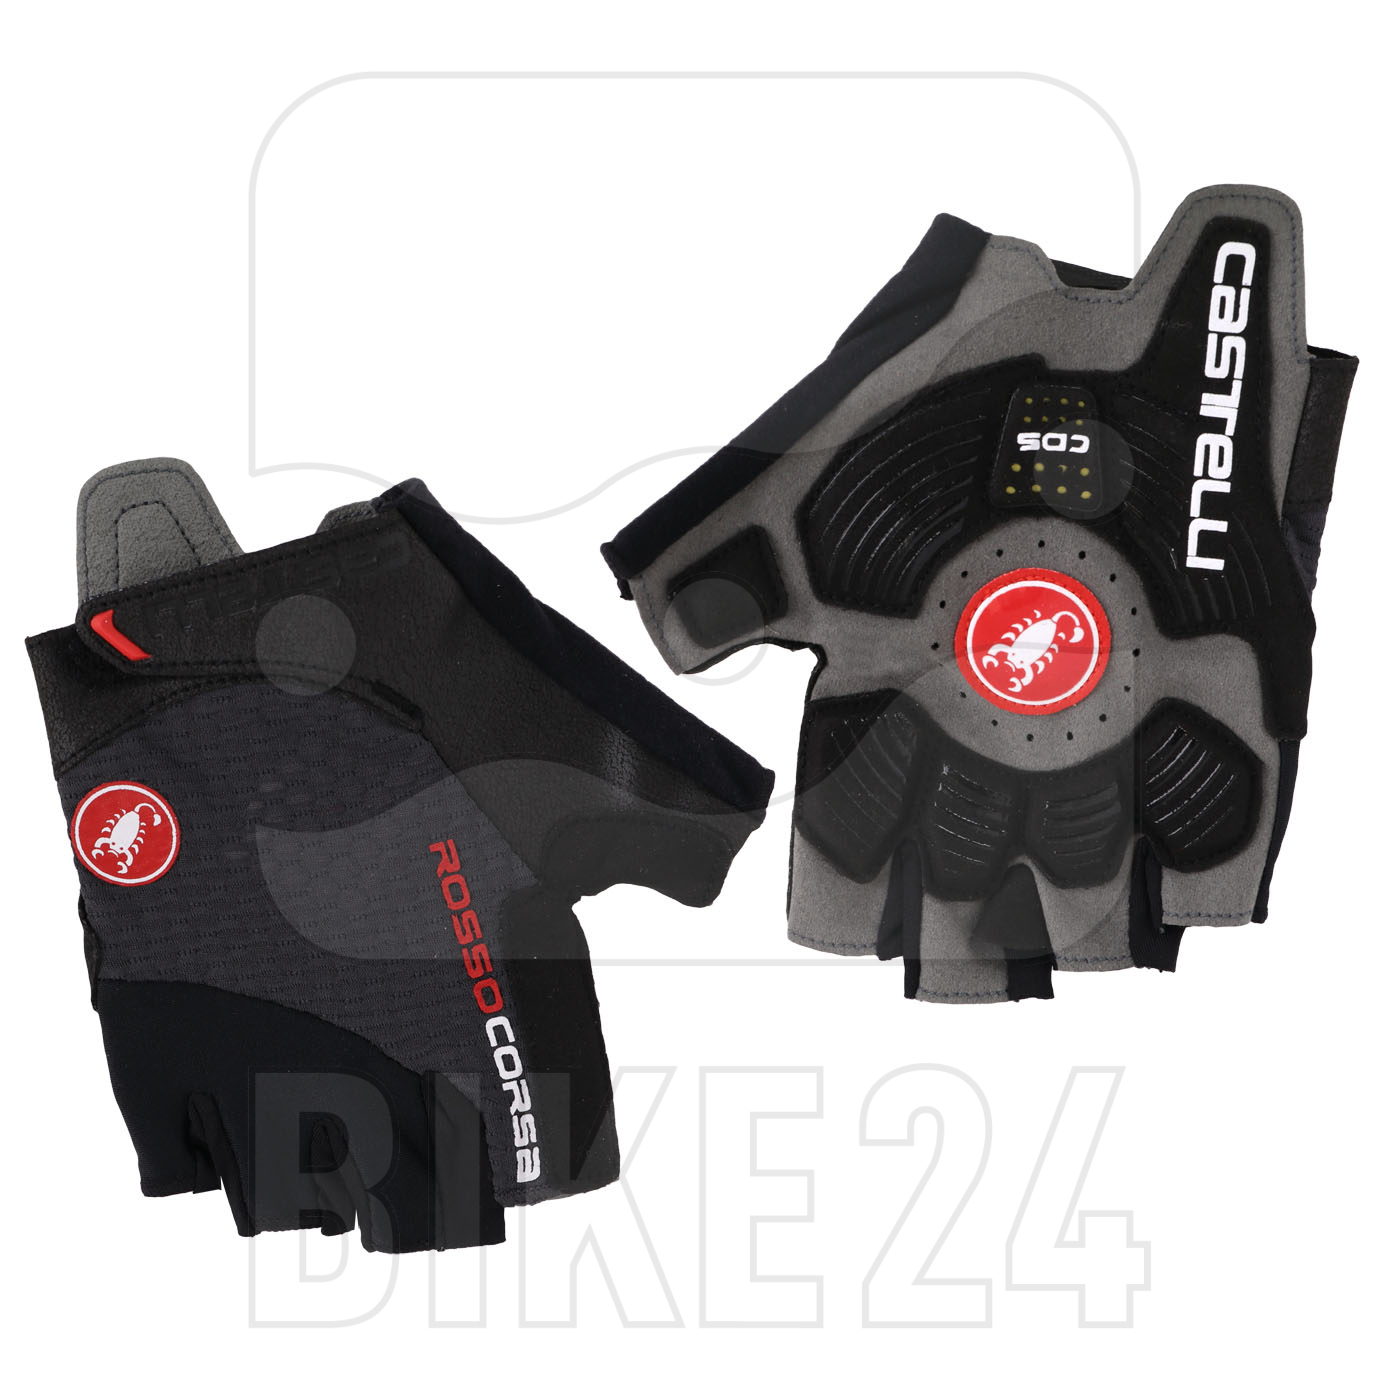 Produktbild von Castelli Rosso Corsa Pro V Kurzfinger-Handschuhe - dark grey 030